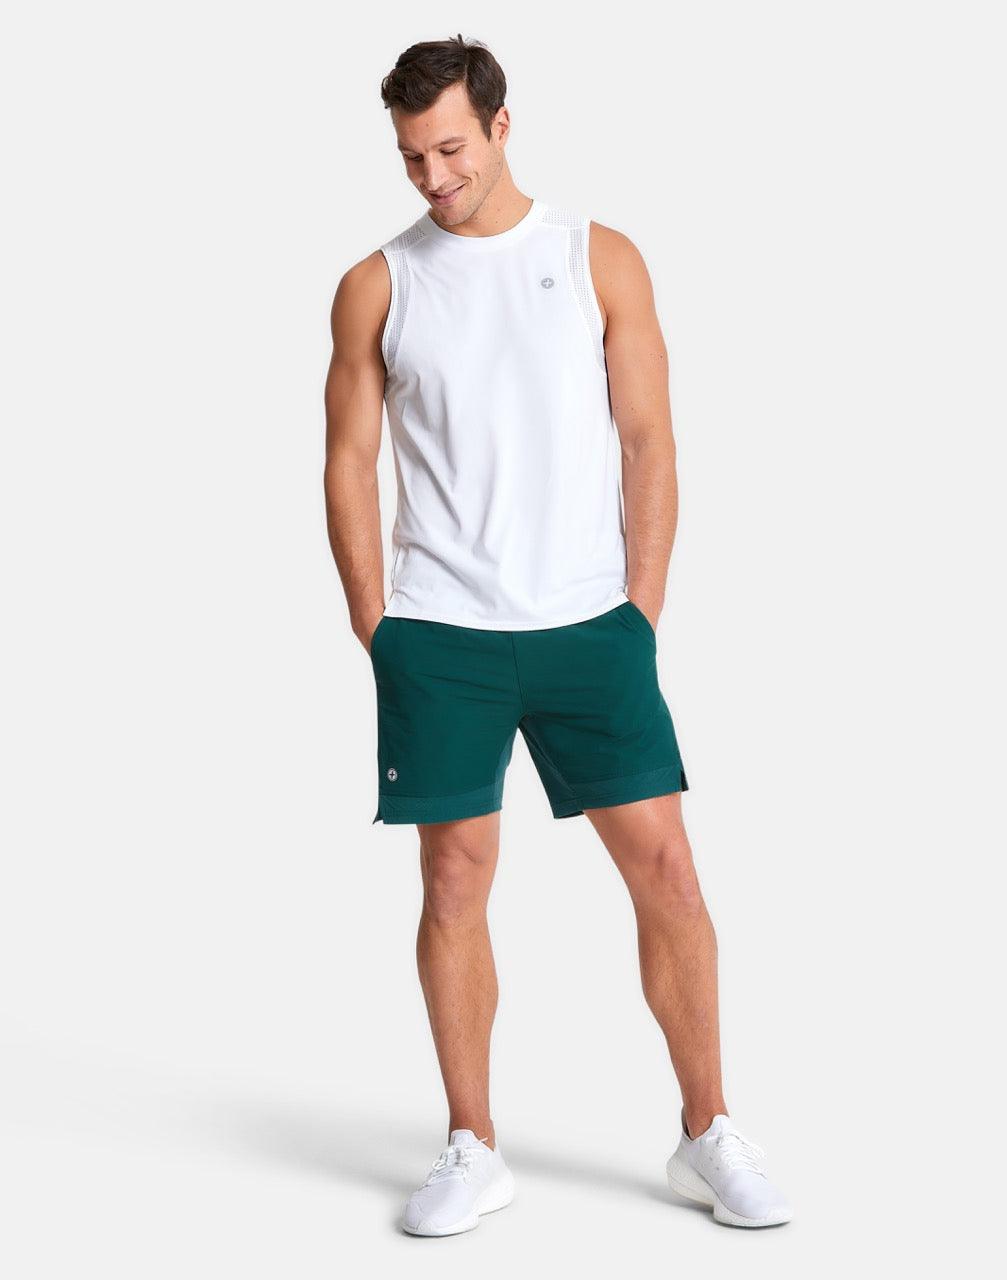 Mens Celero Vest in Striker White - Tanks - Gym+Coffee IE